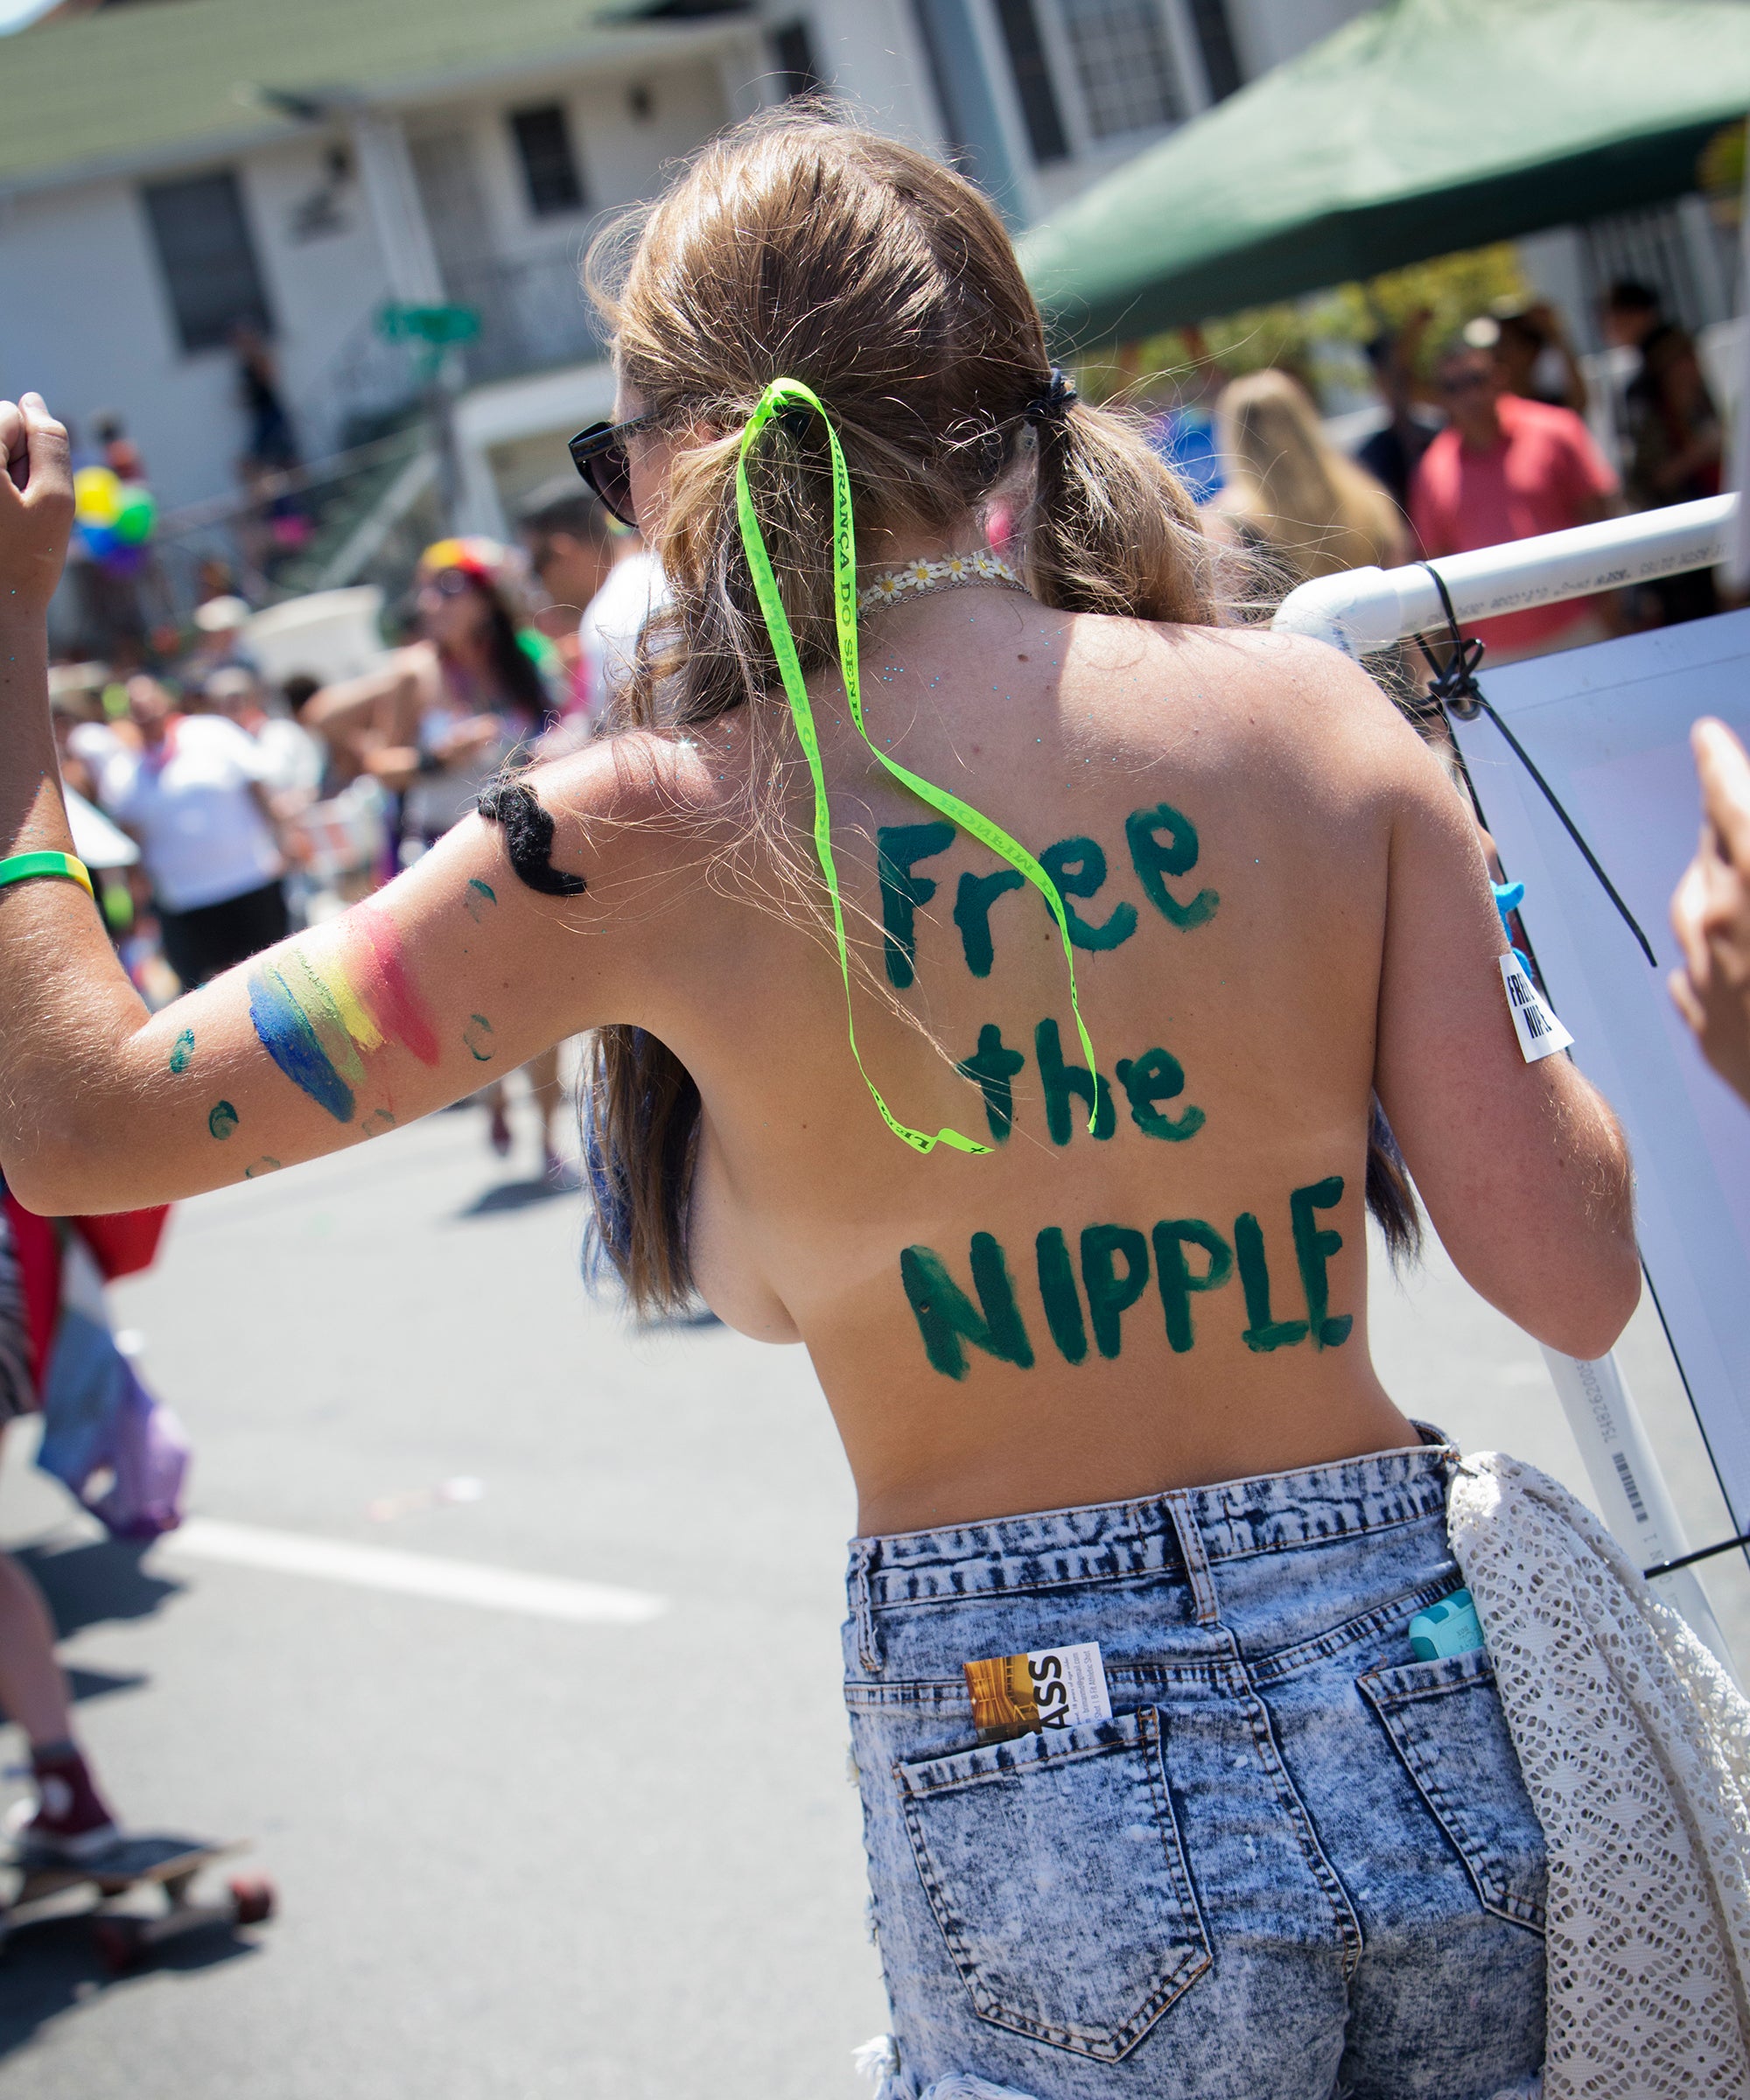 free the nipple selfie